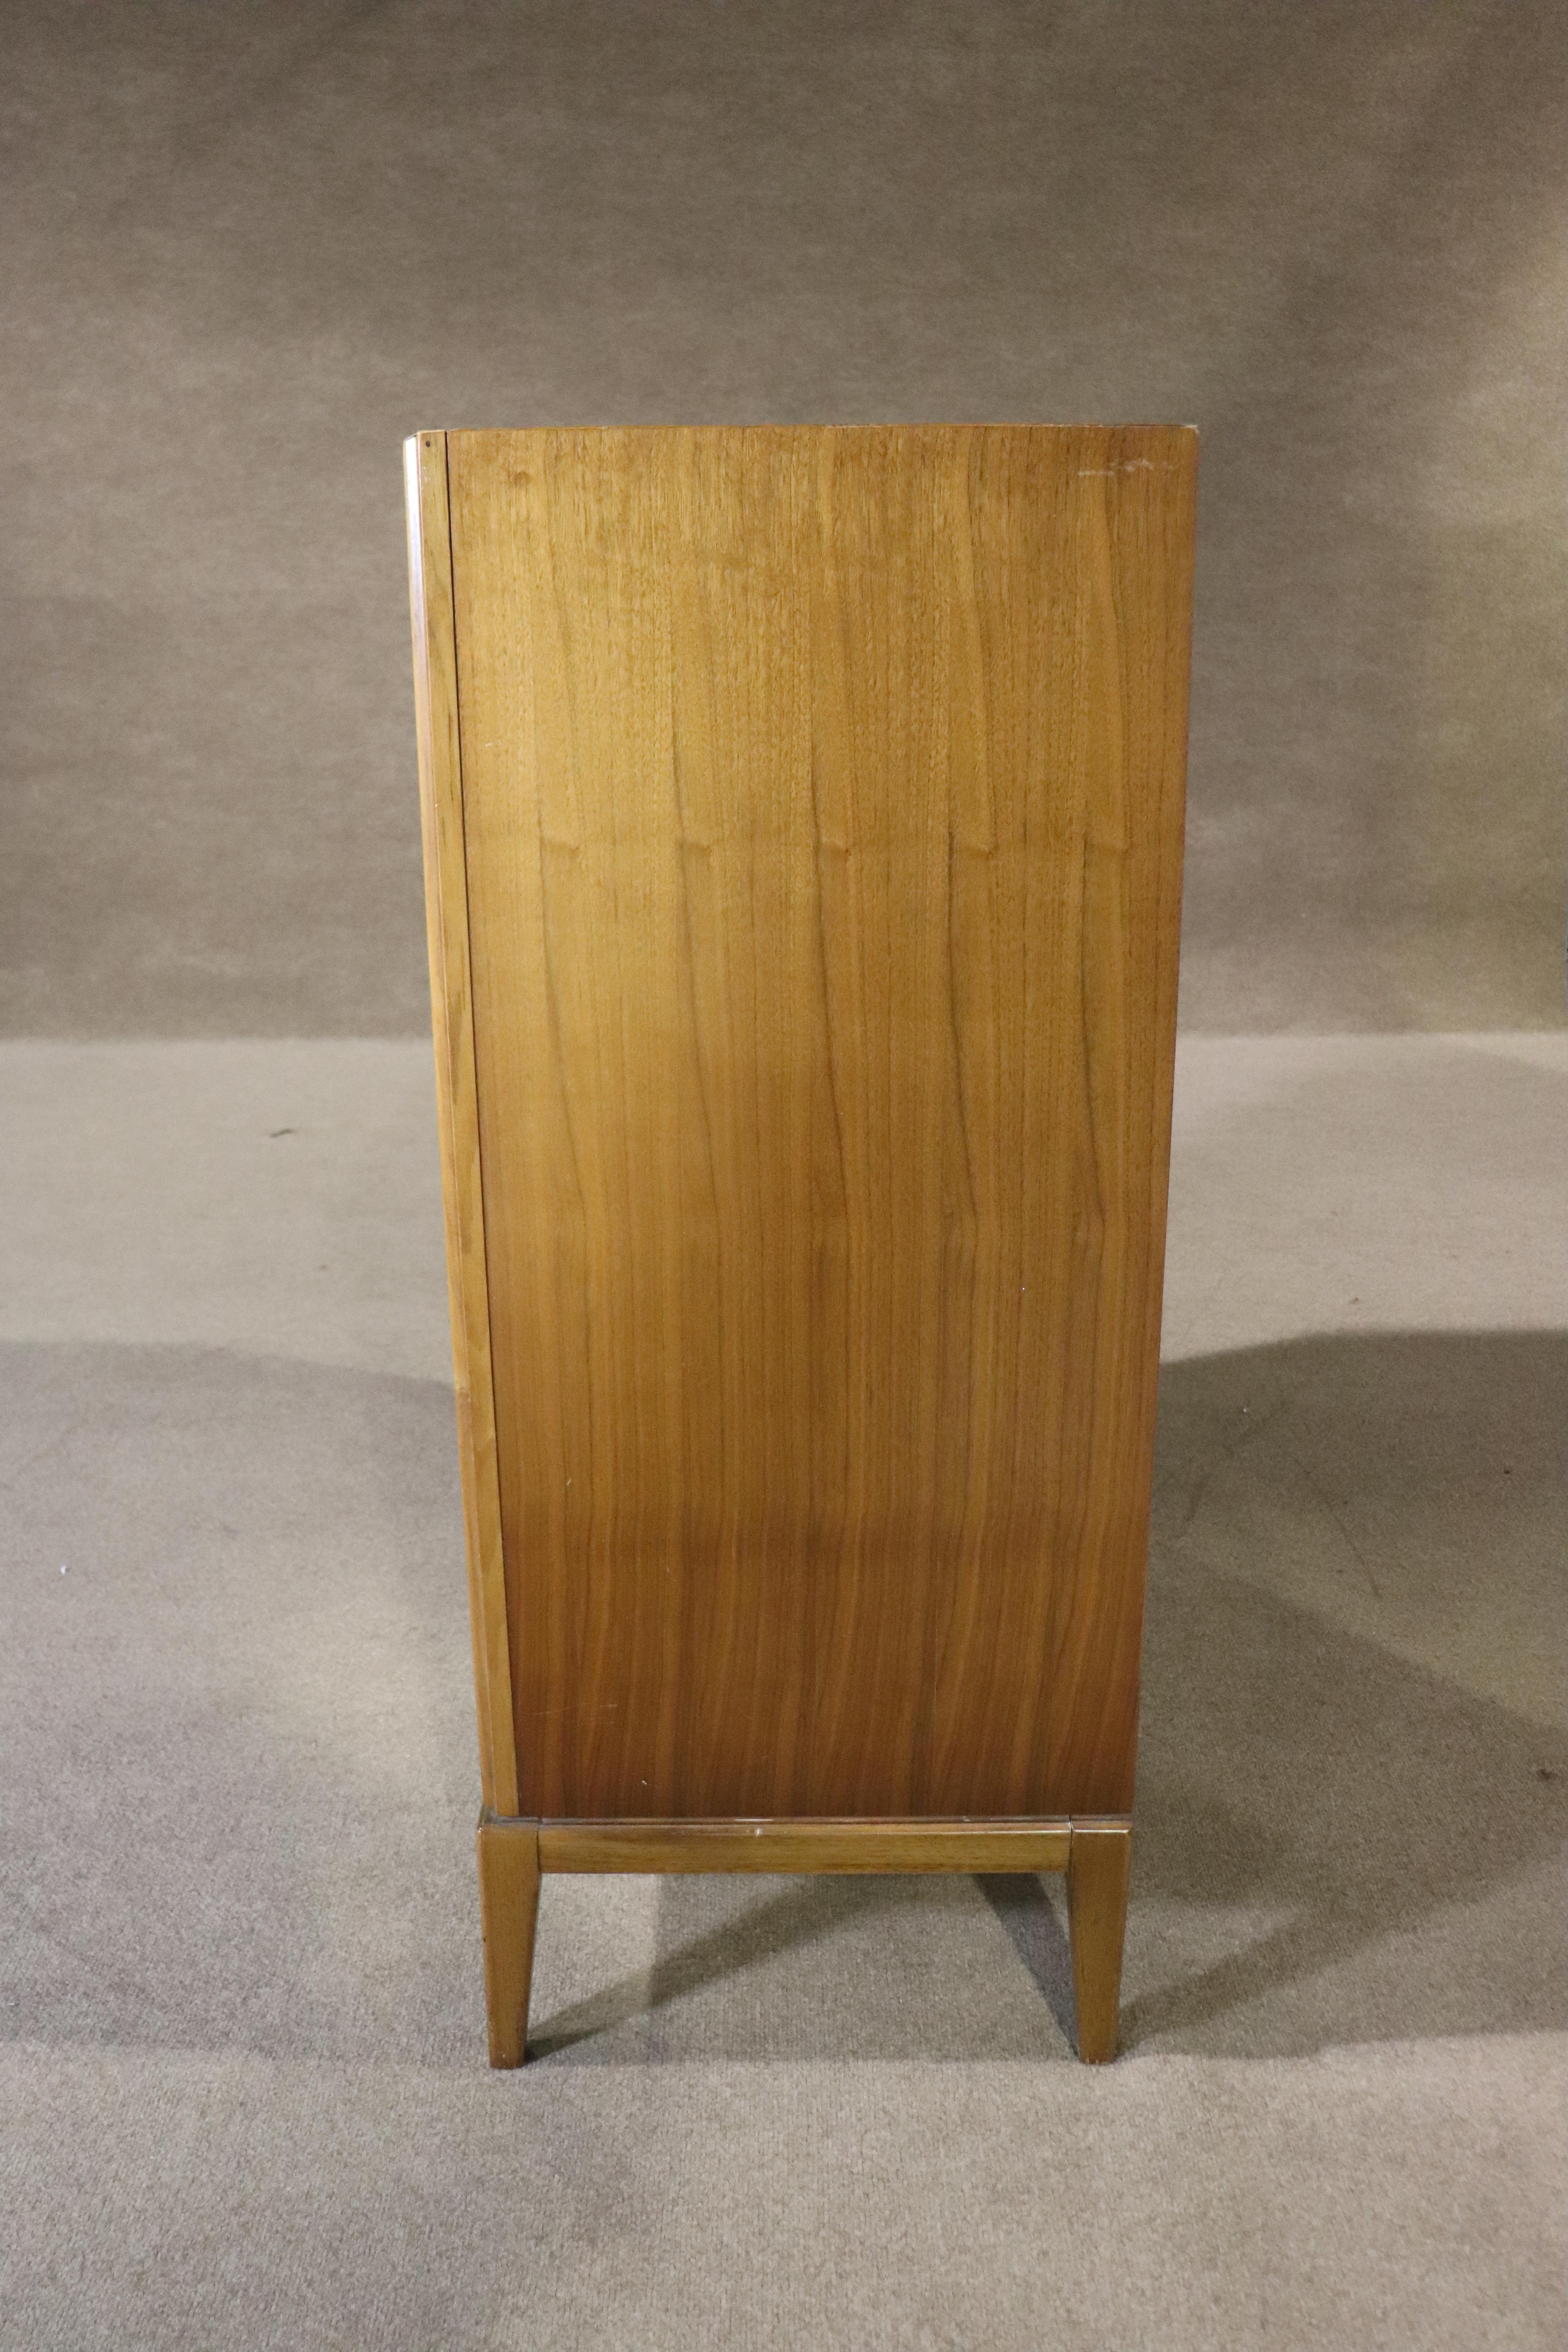 Walnut Vintage Dresser w/ Inset Rosewood Handles For Sale